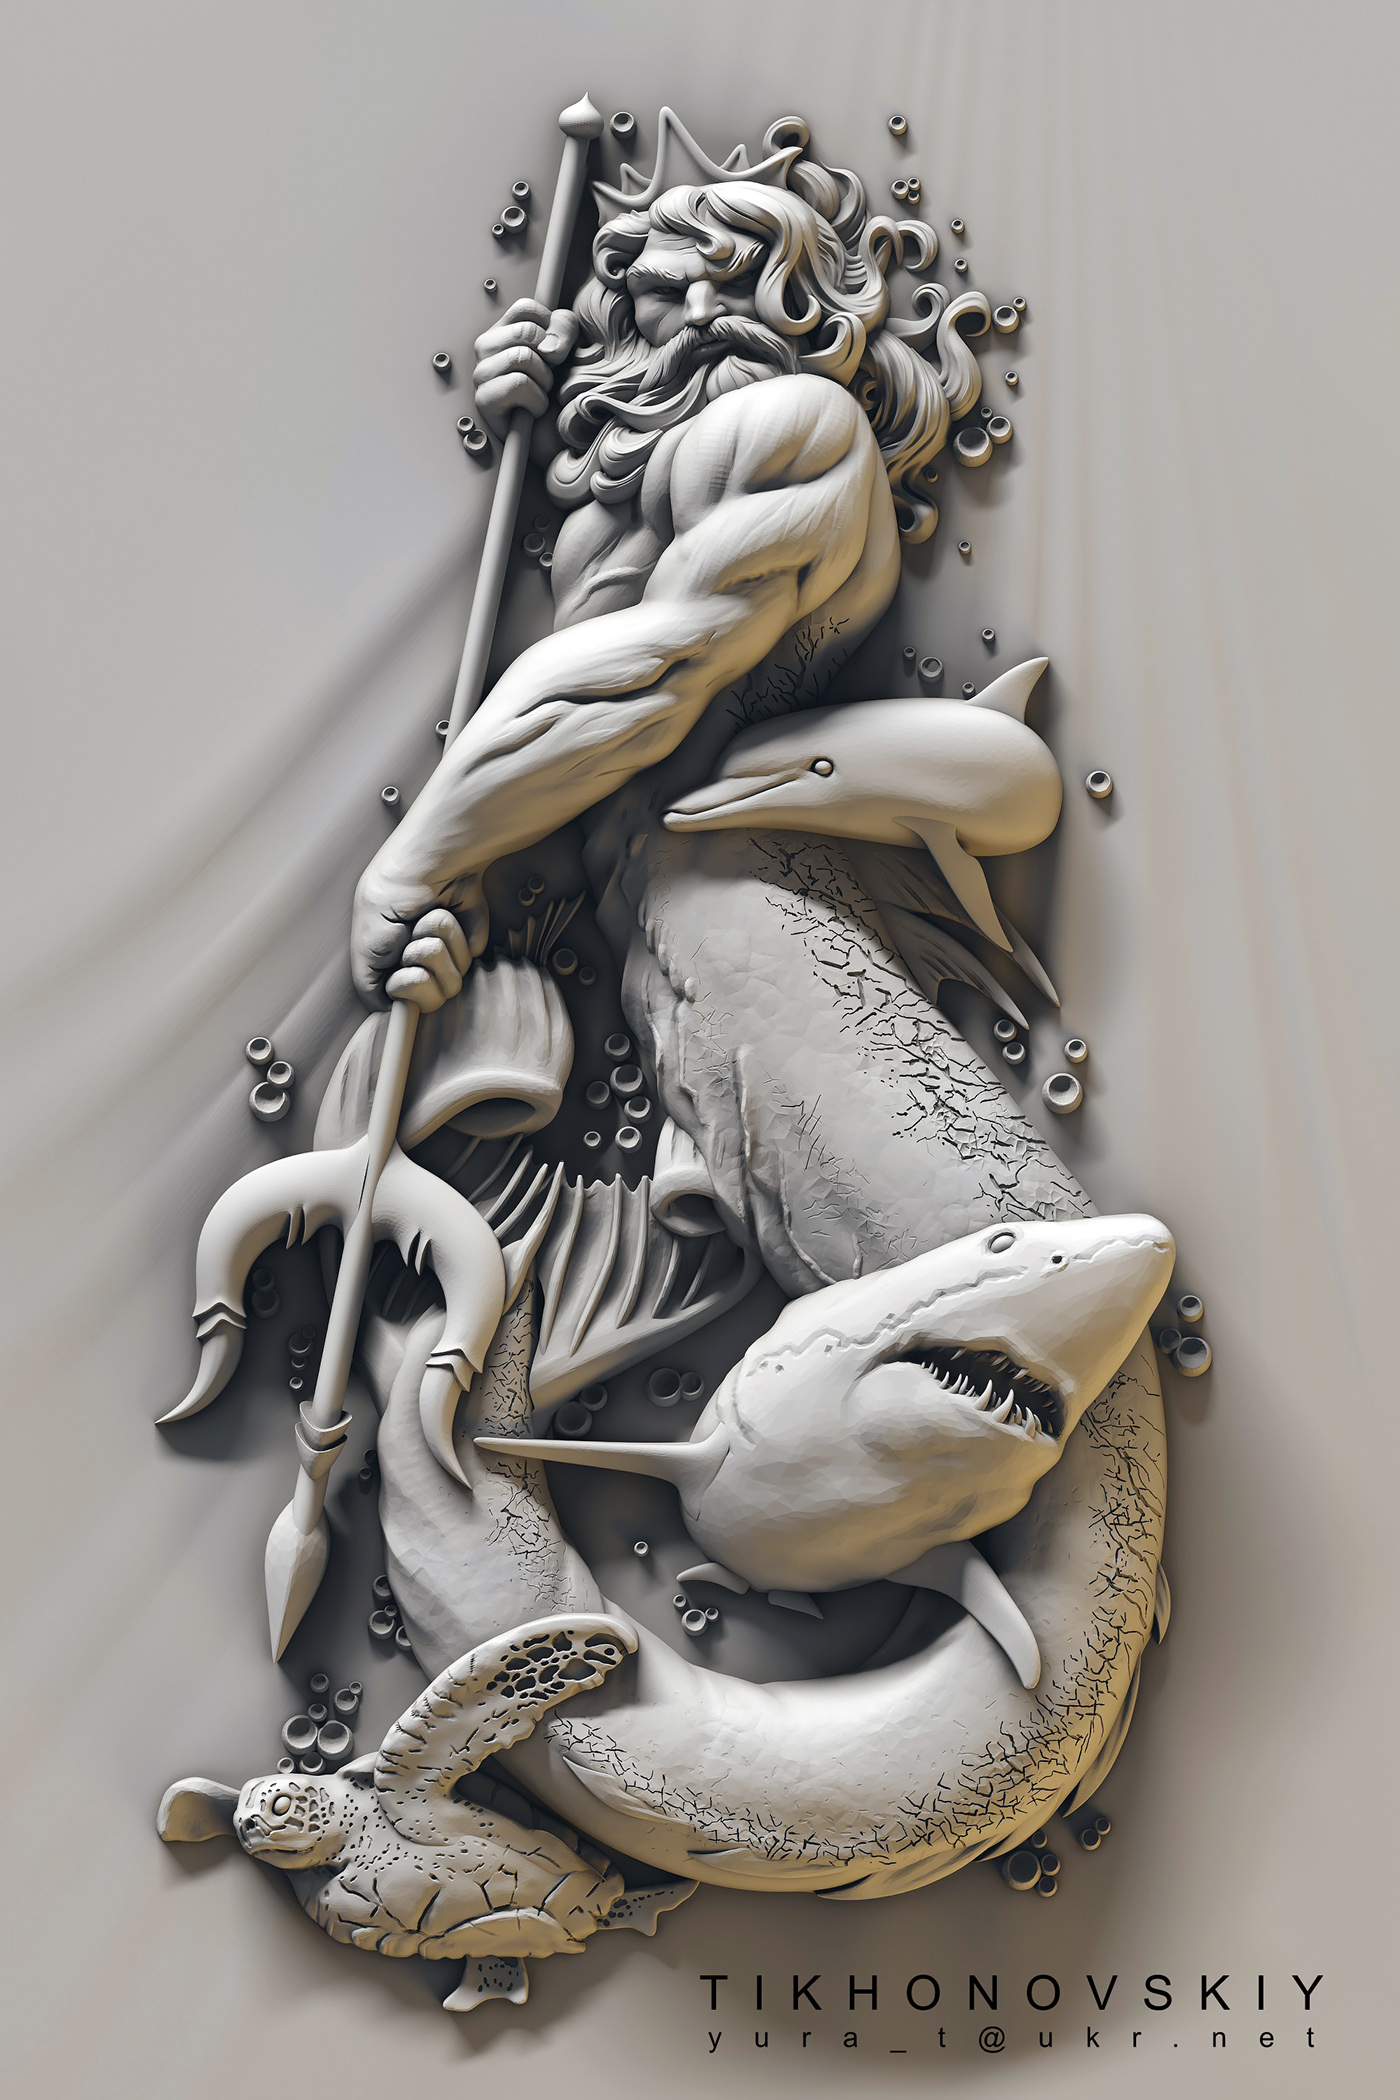 cnc bas-relief 3D portrait woodcarving sculpture decoration modeling art